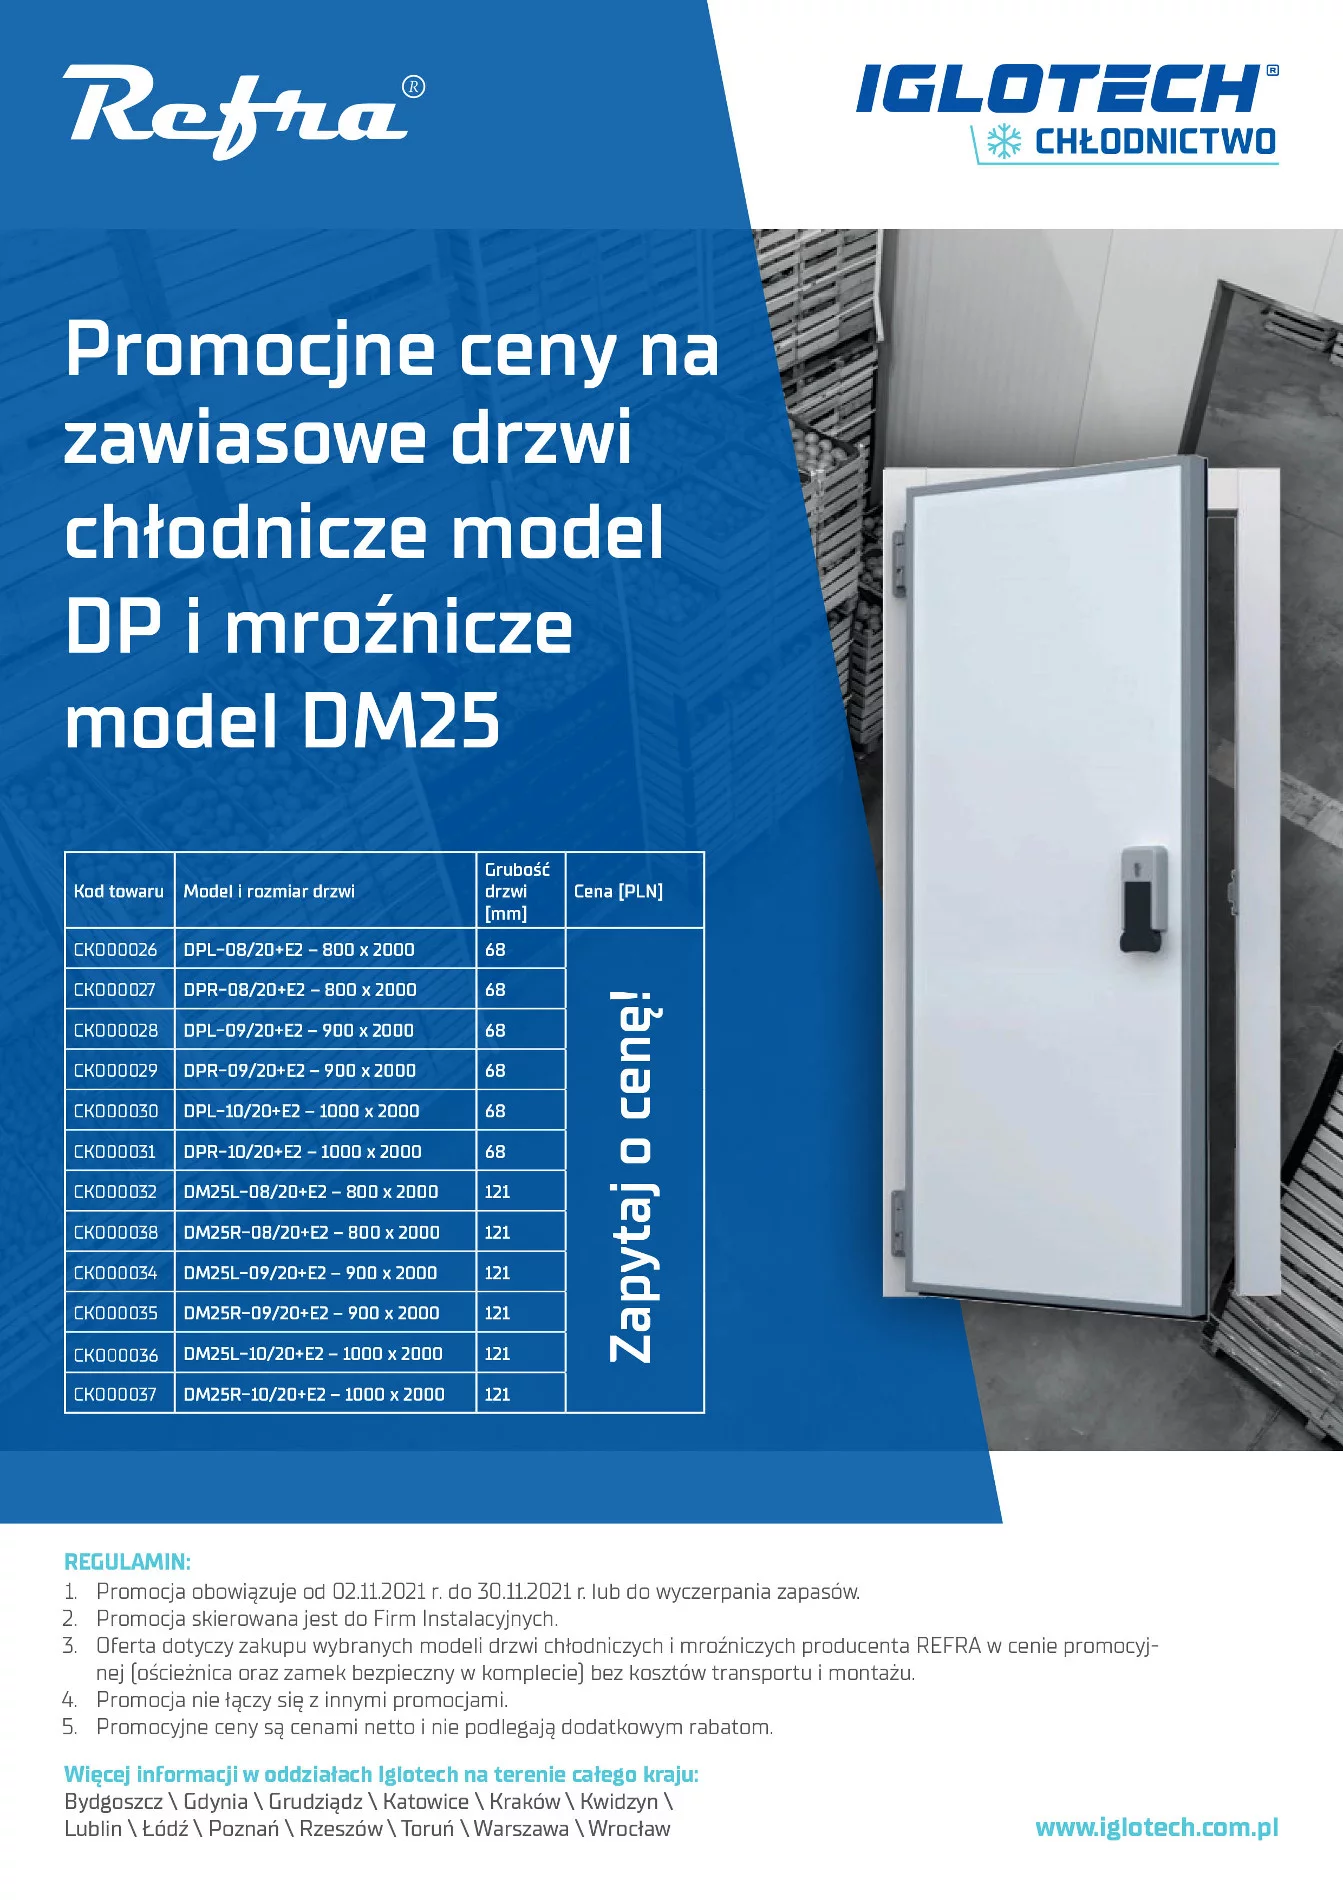 Promocyjne ceny na zawiasowe drzwi chłodnicze model DP i mroźnicze model DM25